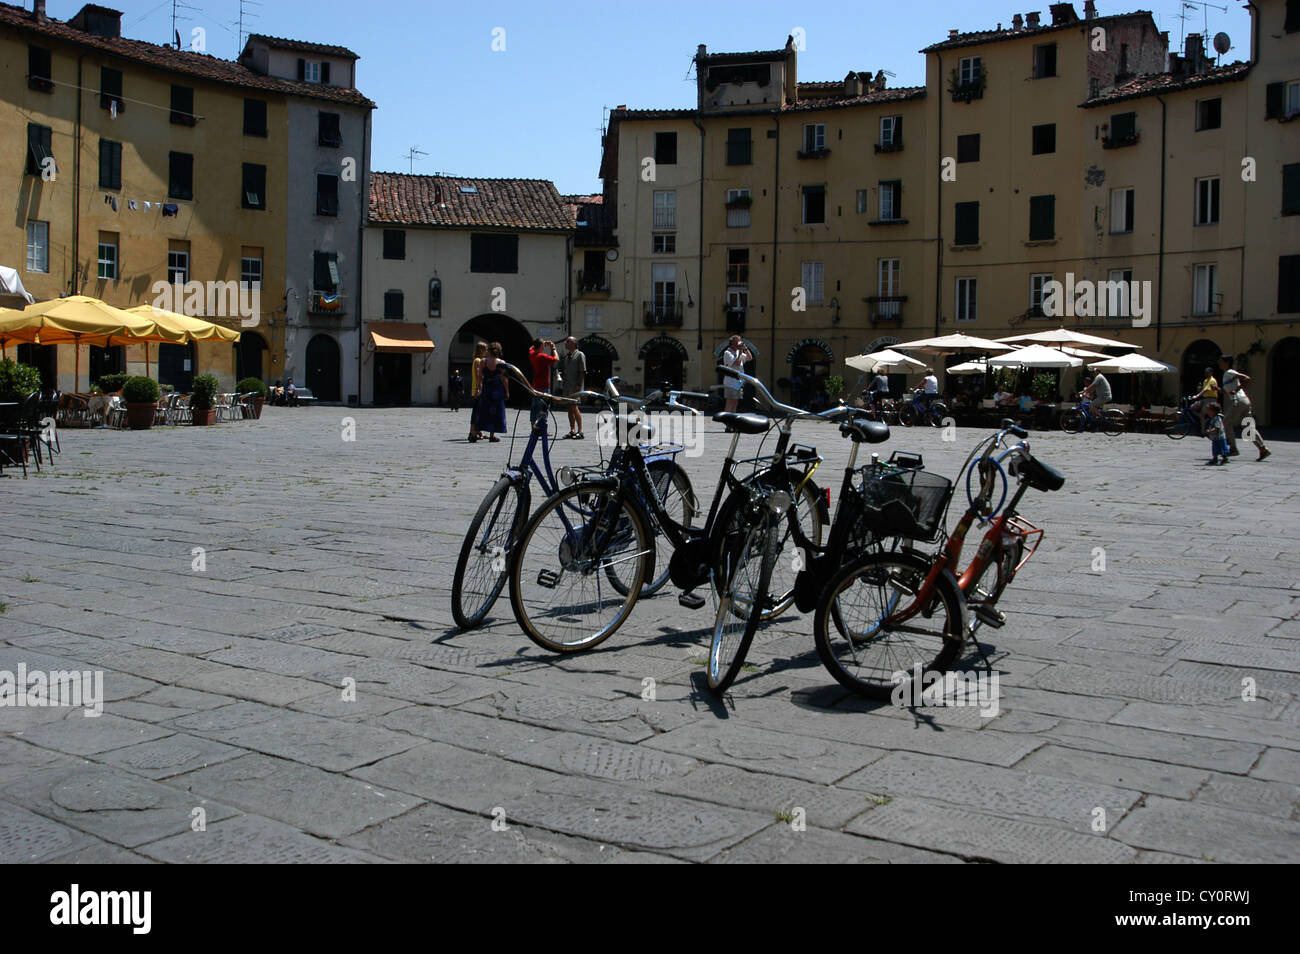 Alquiler de bicicletas para turistas en la plaza, en el pintoresco pueblo de Lucca, en la Toscana, Italia. Foto de stock